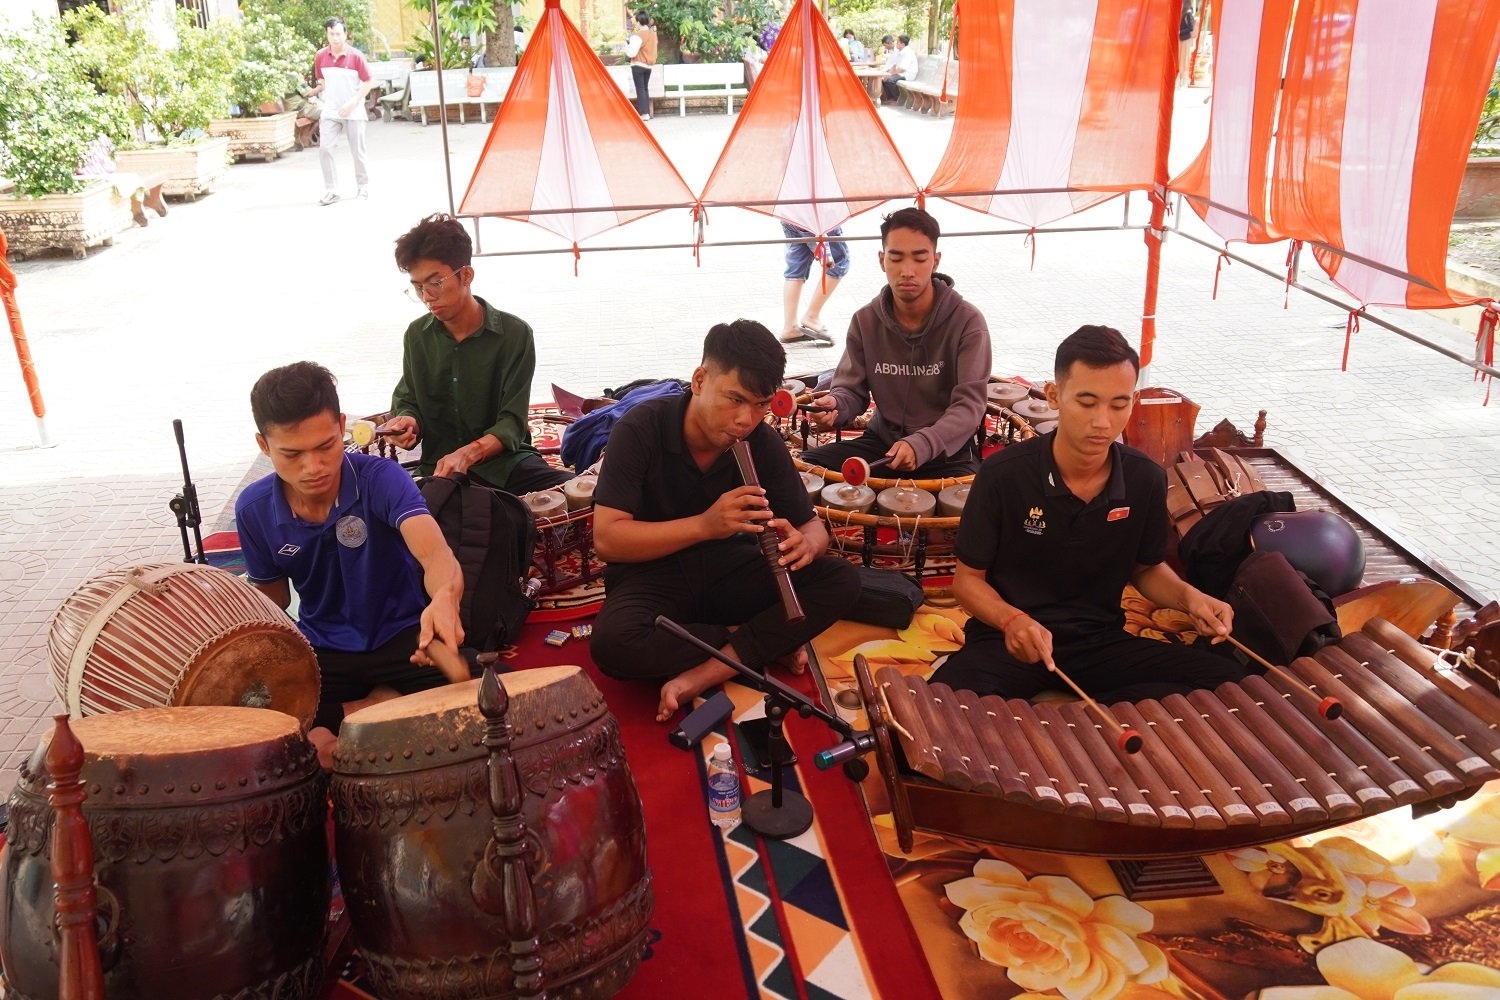  Sinh viên Kim Đạt ( người giữa) hiện đang phụ trách nhóm nhạc ngũ âm biểu diễn tại chùa Âng (TP. Trà Vinh)